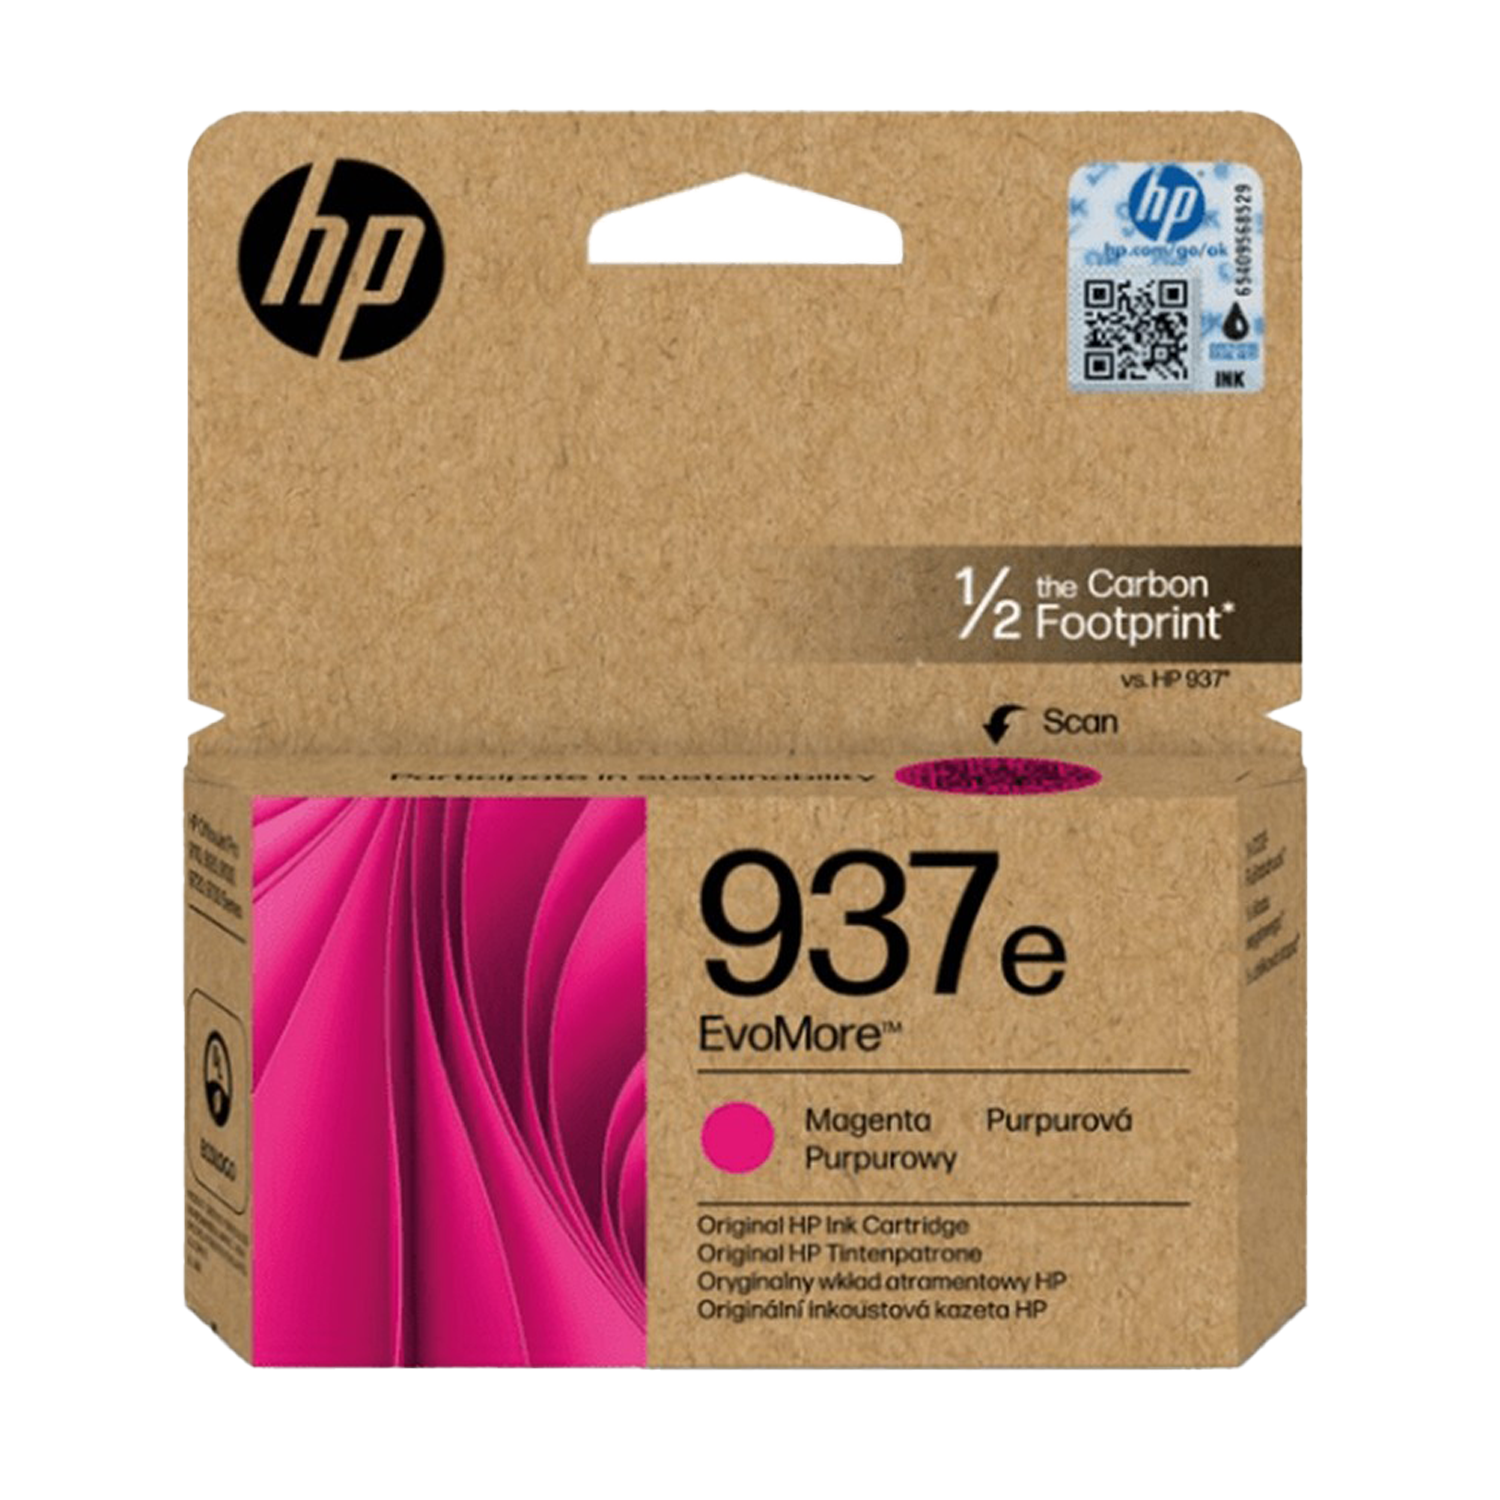 ראש דיו מגנטה סדרה 937e XL 4S6W7NE למדפסת דגם HP OfficeJet Pro 9730 Wide  מק”ט יצרן: 4S6W7NE  תפוקת עמודים: 1650 עמודים סדרה: HP937e XL צבע מחסנית הדפסה: מגנטה  התאמה למדפסות: HP OfficeJet Pro 9730 Wide Format All-in-One Printer